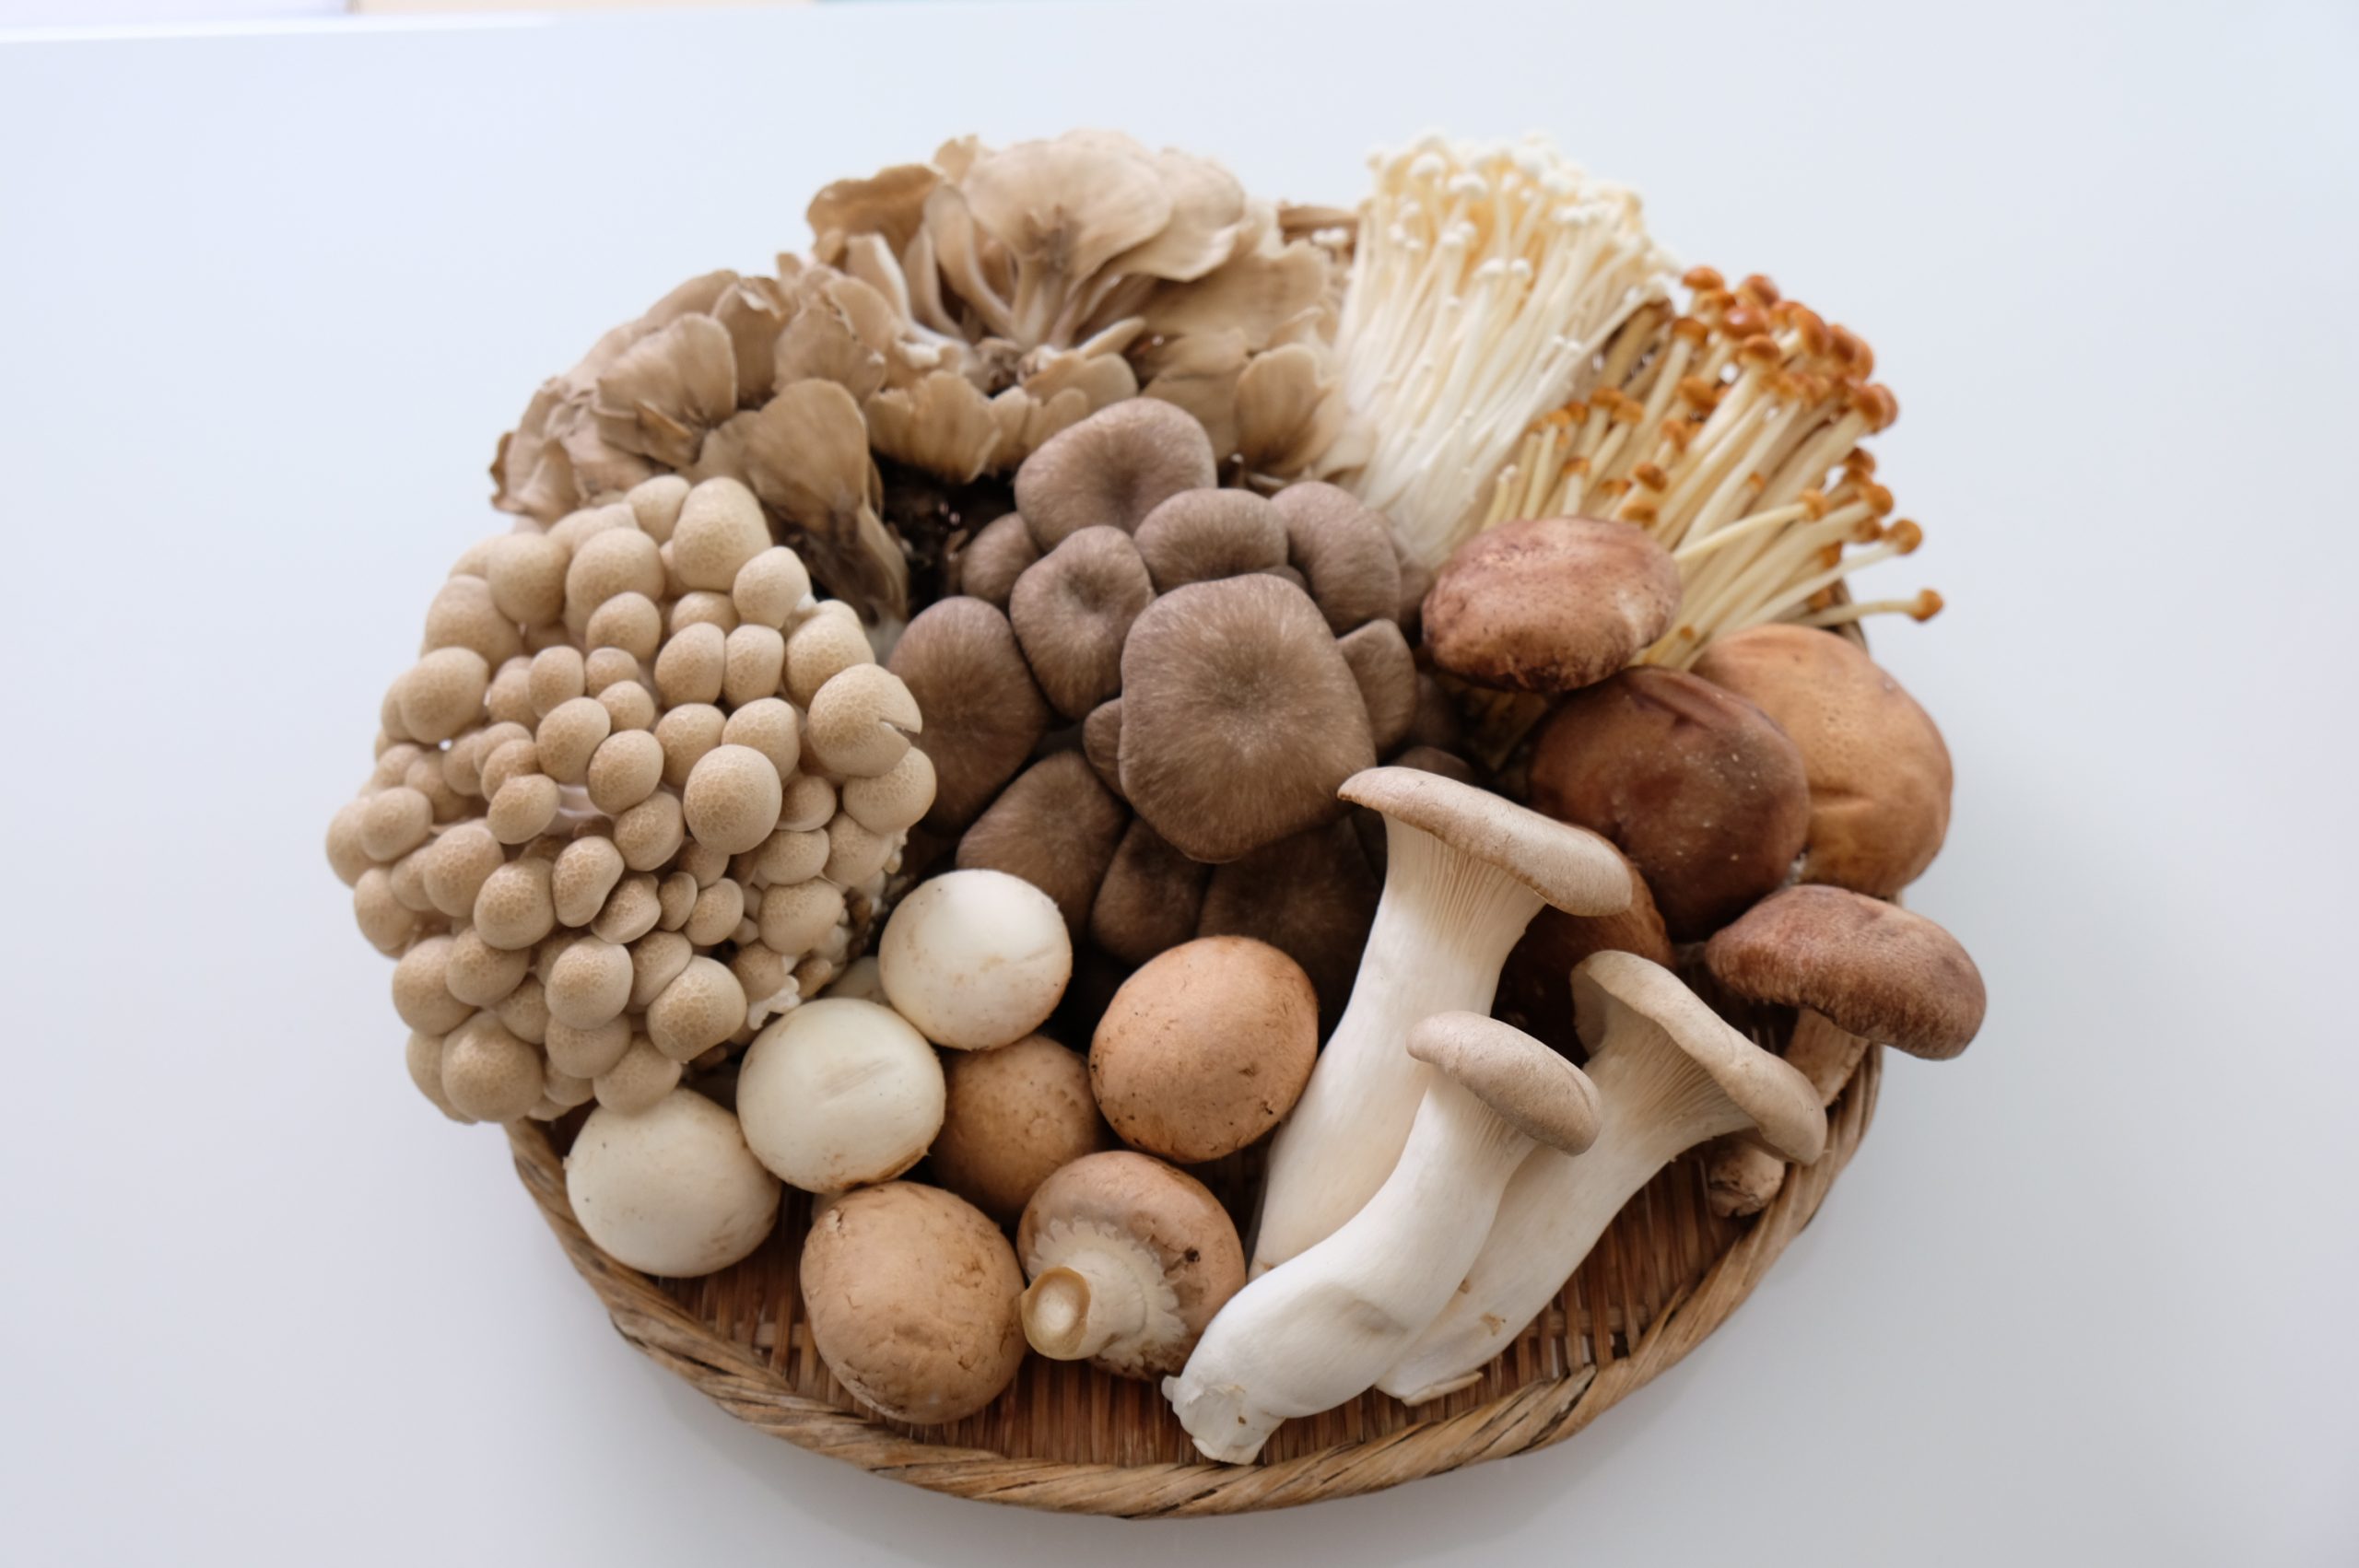 Além do shimeji e shitake: veja outros saborosos cogumelos japoneses